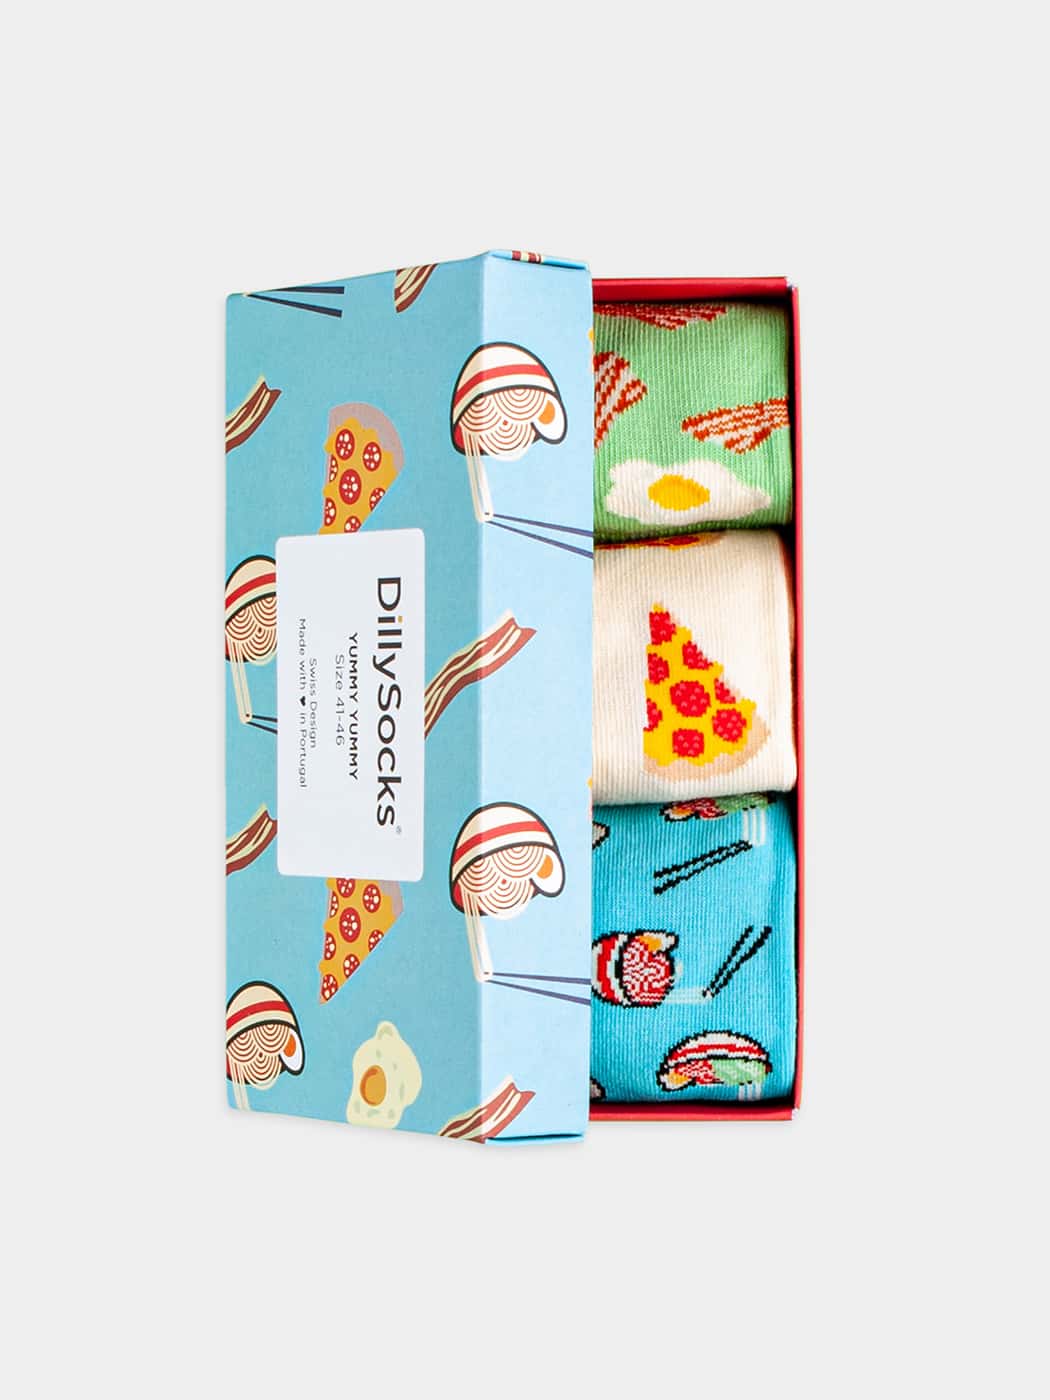 - Socken-Geschenkbox in Blau Weiss Grün mit Essen Motiv/Muster von DillySocks